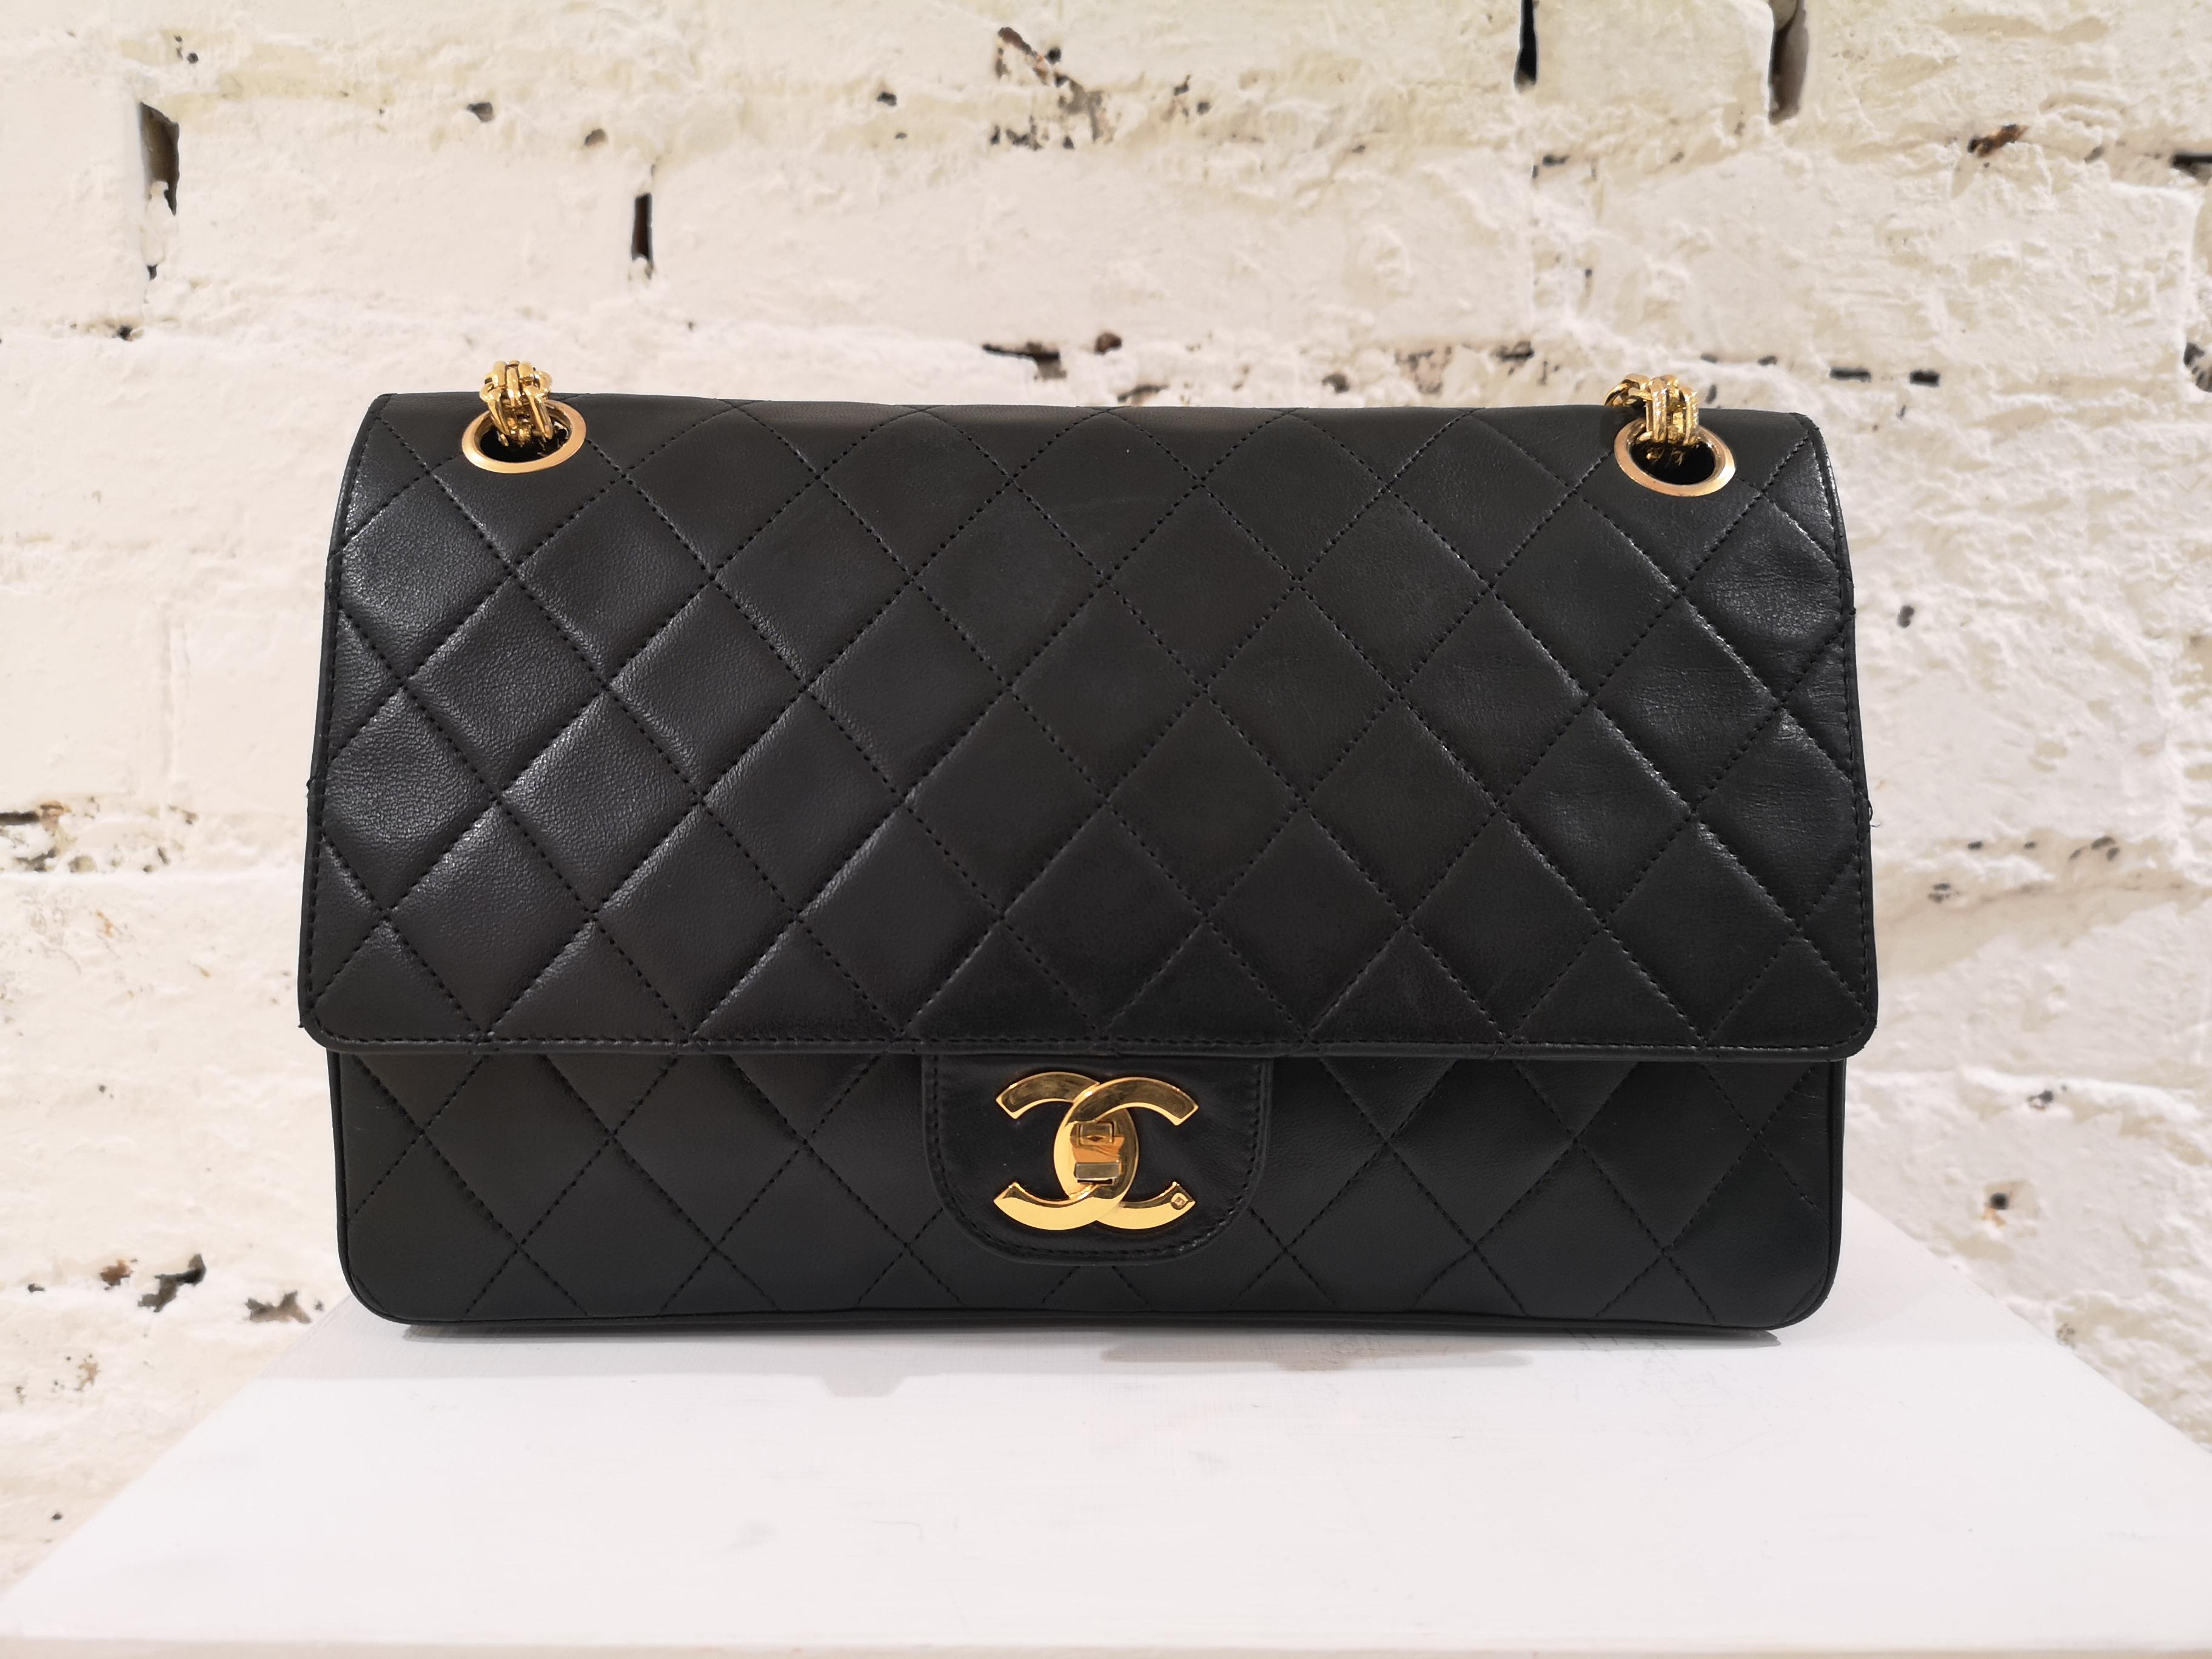 Chanel 2.55 Black Leather Shoulder Bag
